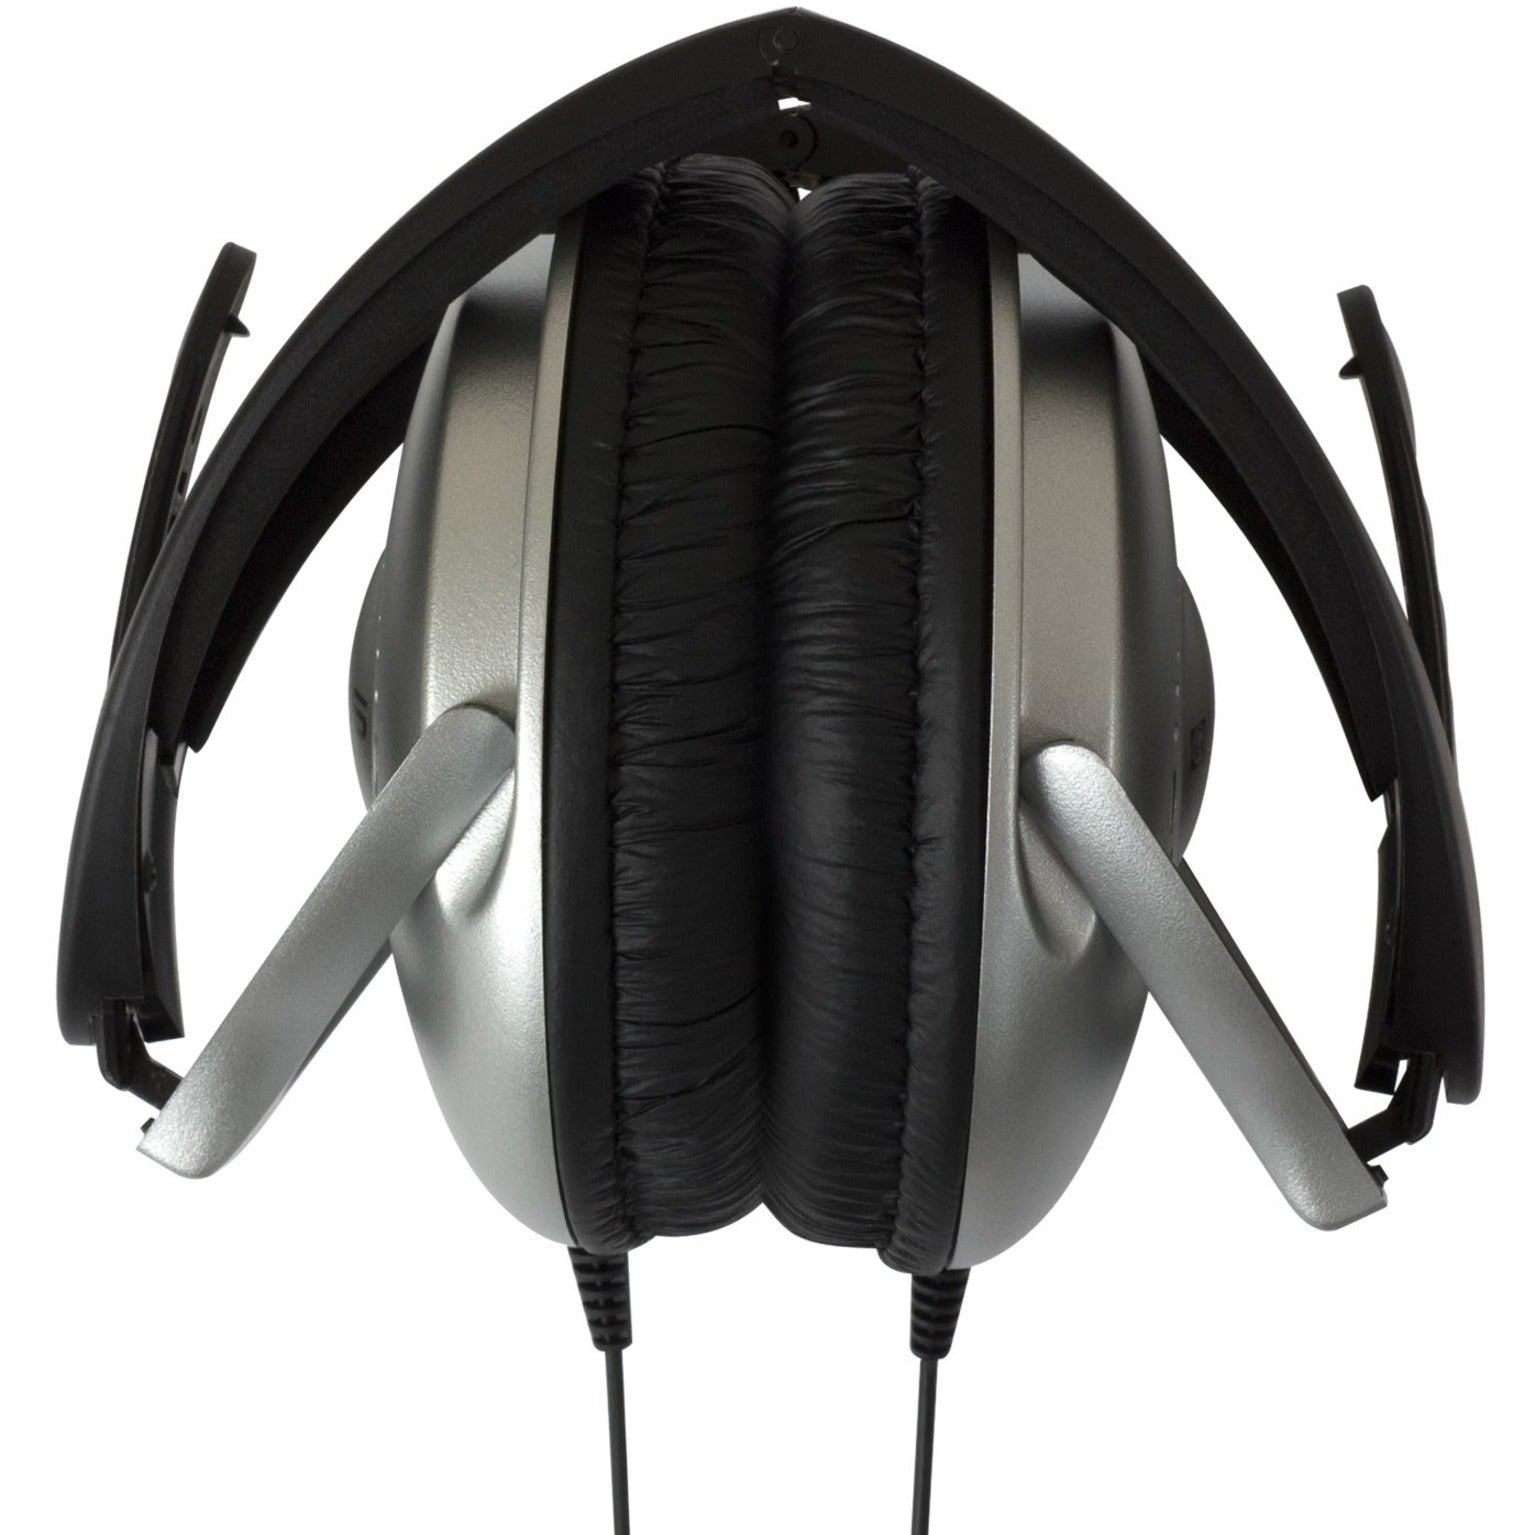 Koss UR18 Folding Home Theater Stereo Headphones, Adjustable Headband, Deep Bass, Lightweight